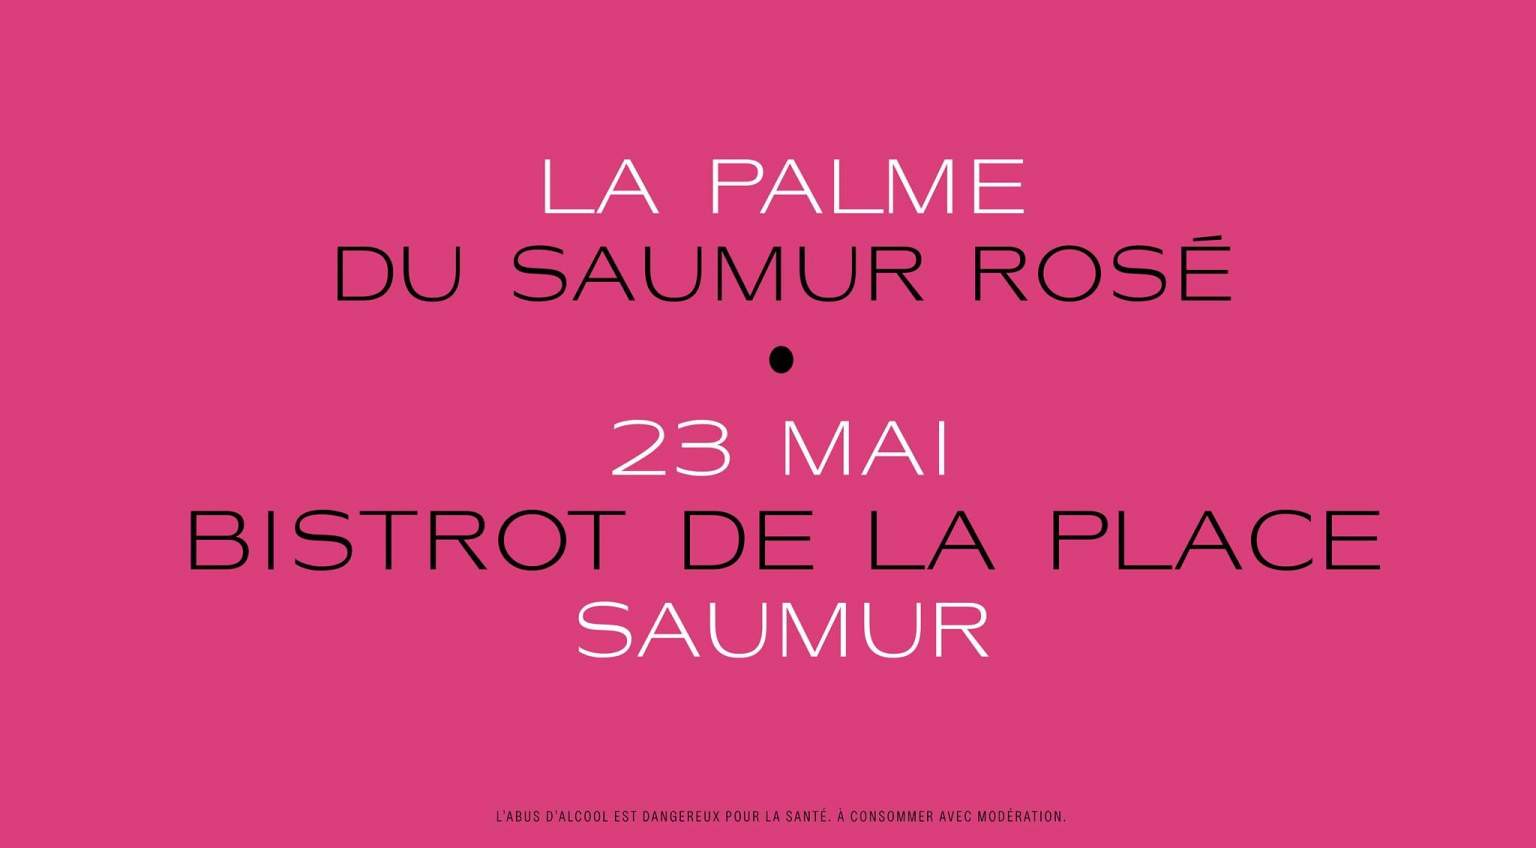 Cette année encore, venez assister à la Palme du Saumur Rosé au Bistrot de la Place. 